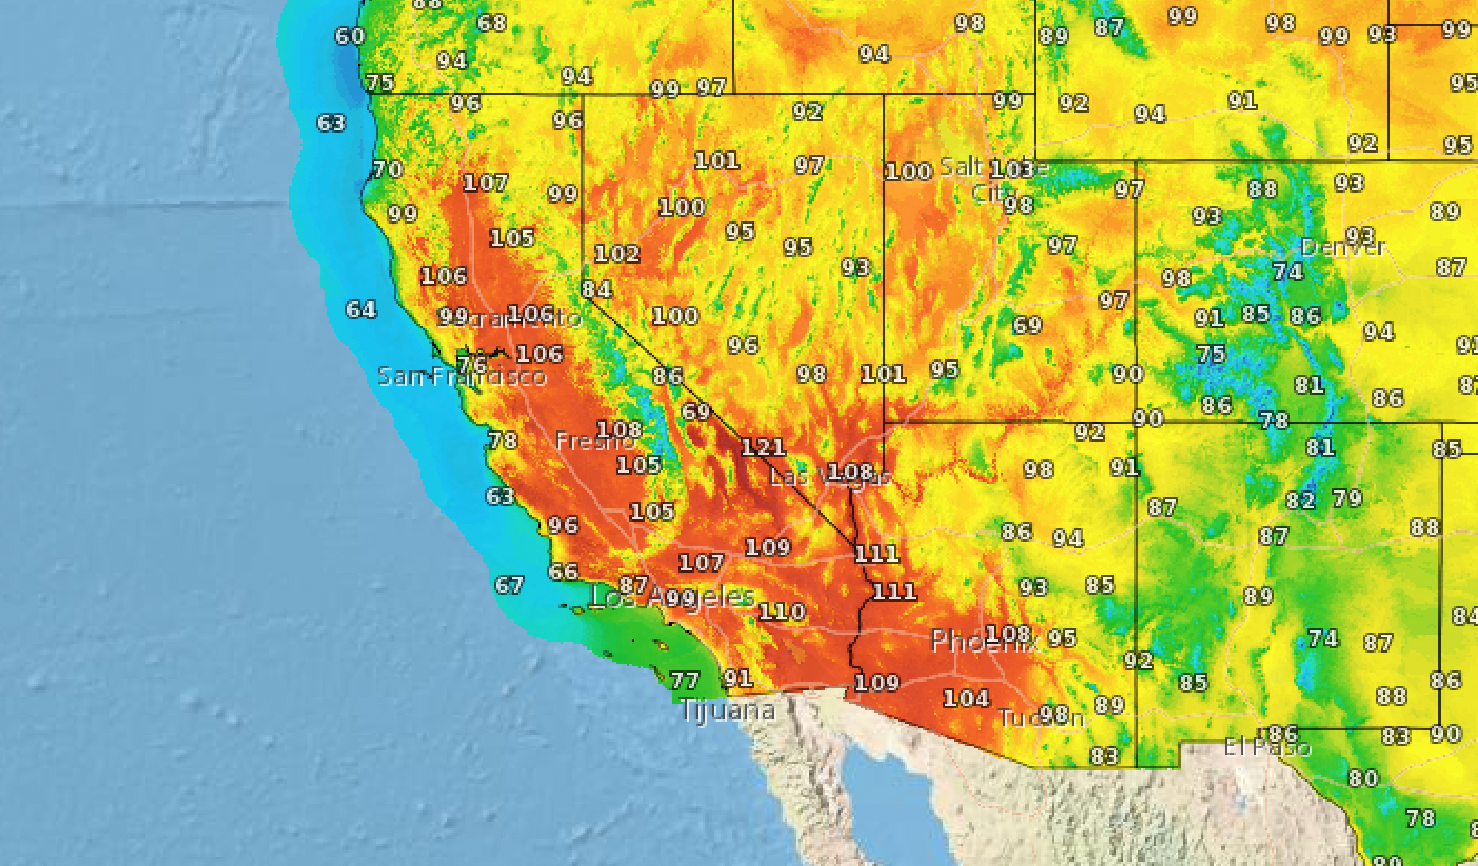 Se pronostican altas temperaturas en el Día del Trabajo en California y otros estados del oeste, mientras se extiende una gran ola de calor